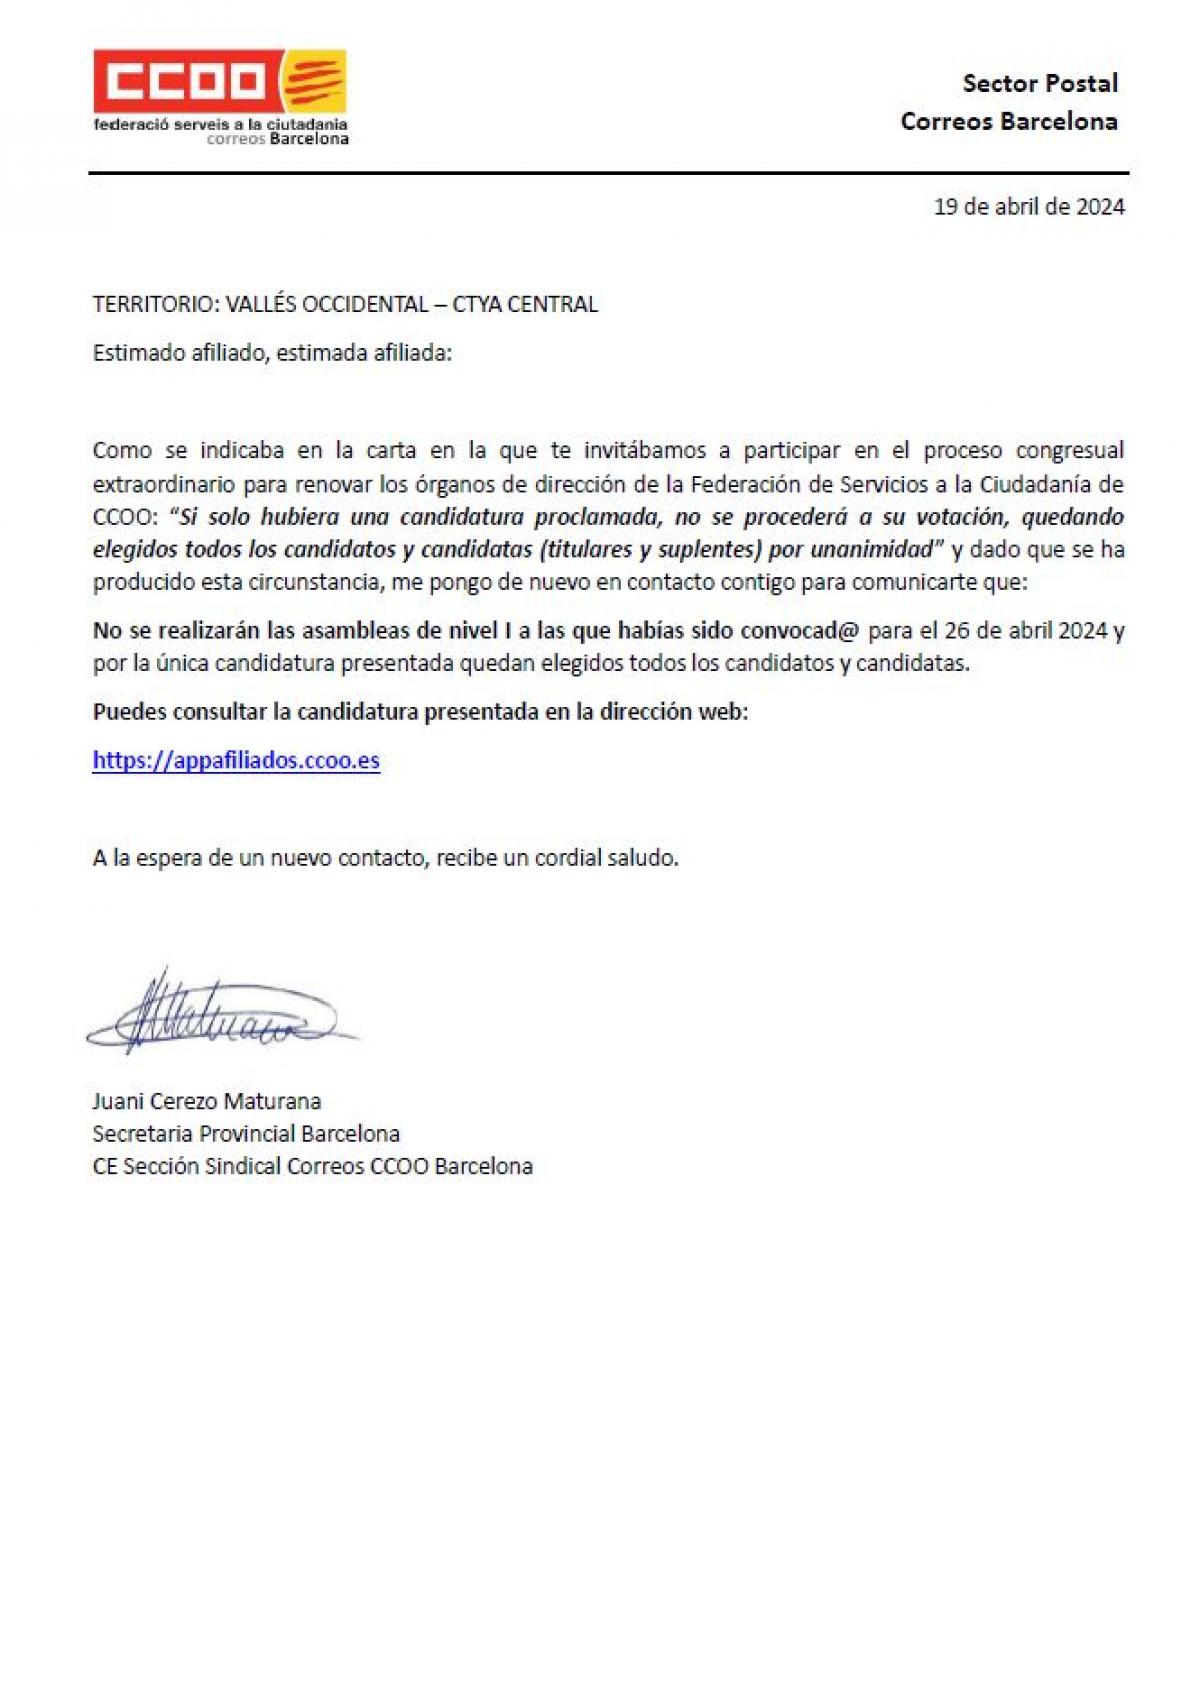 Proclamadas candidaturas Asamblea NI Seccin Sindical Comarca del Baix Llobregat - Alt Peneds - Garraf - Anoia (Barcelona)